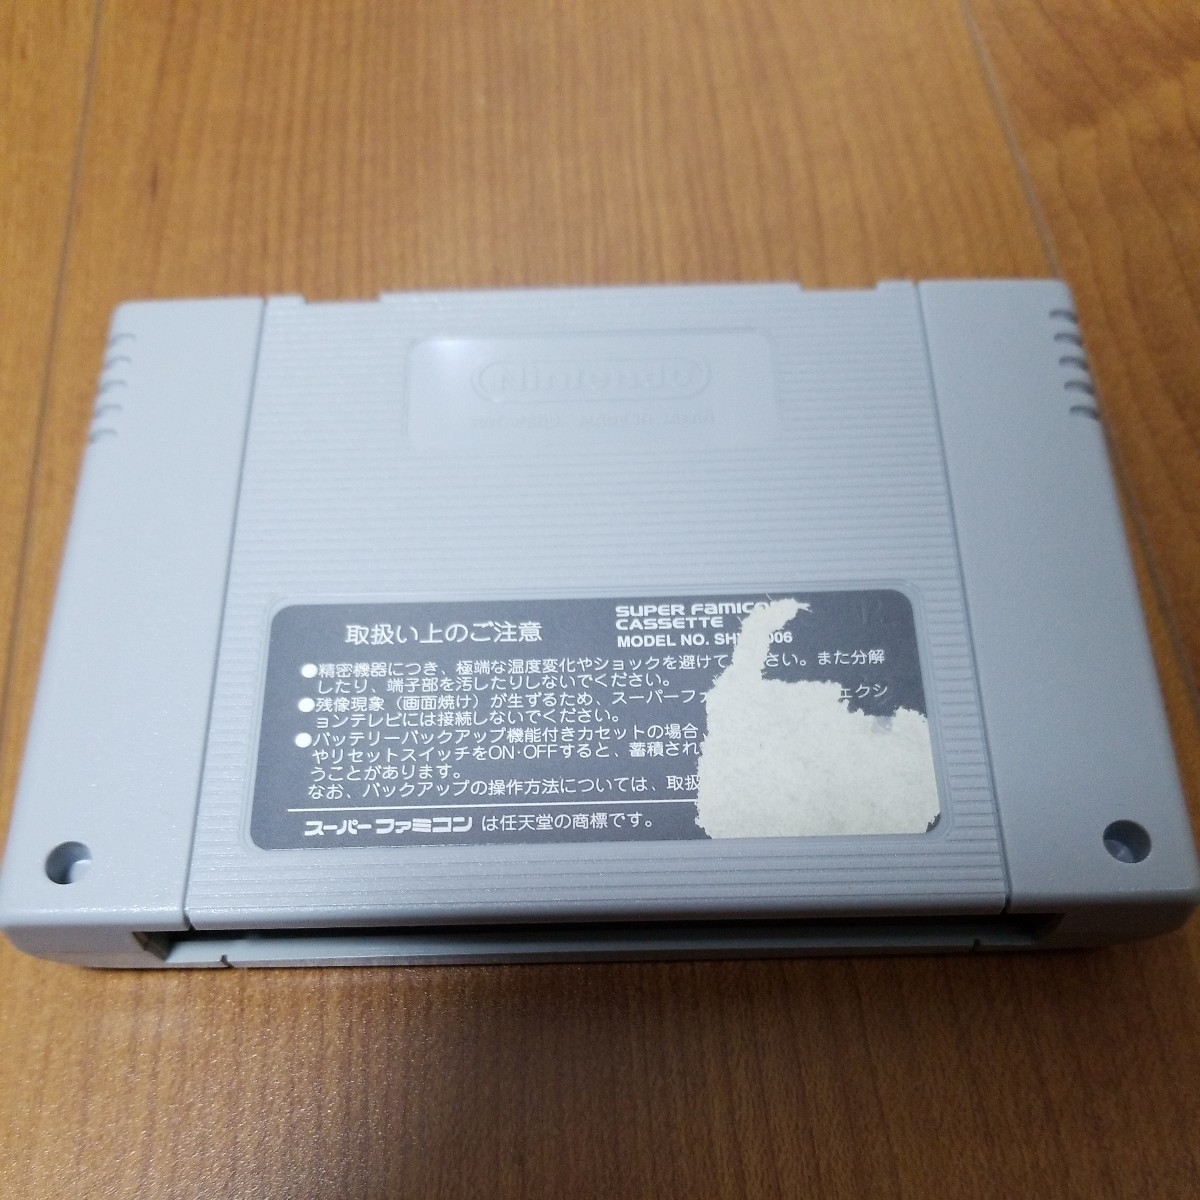  super патинко большой битва SFC Super Famicom soft 